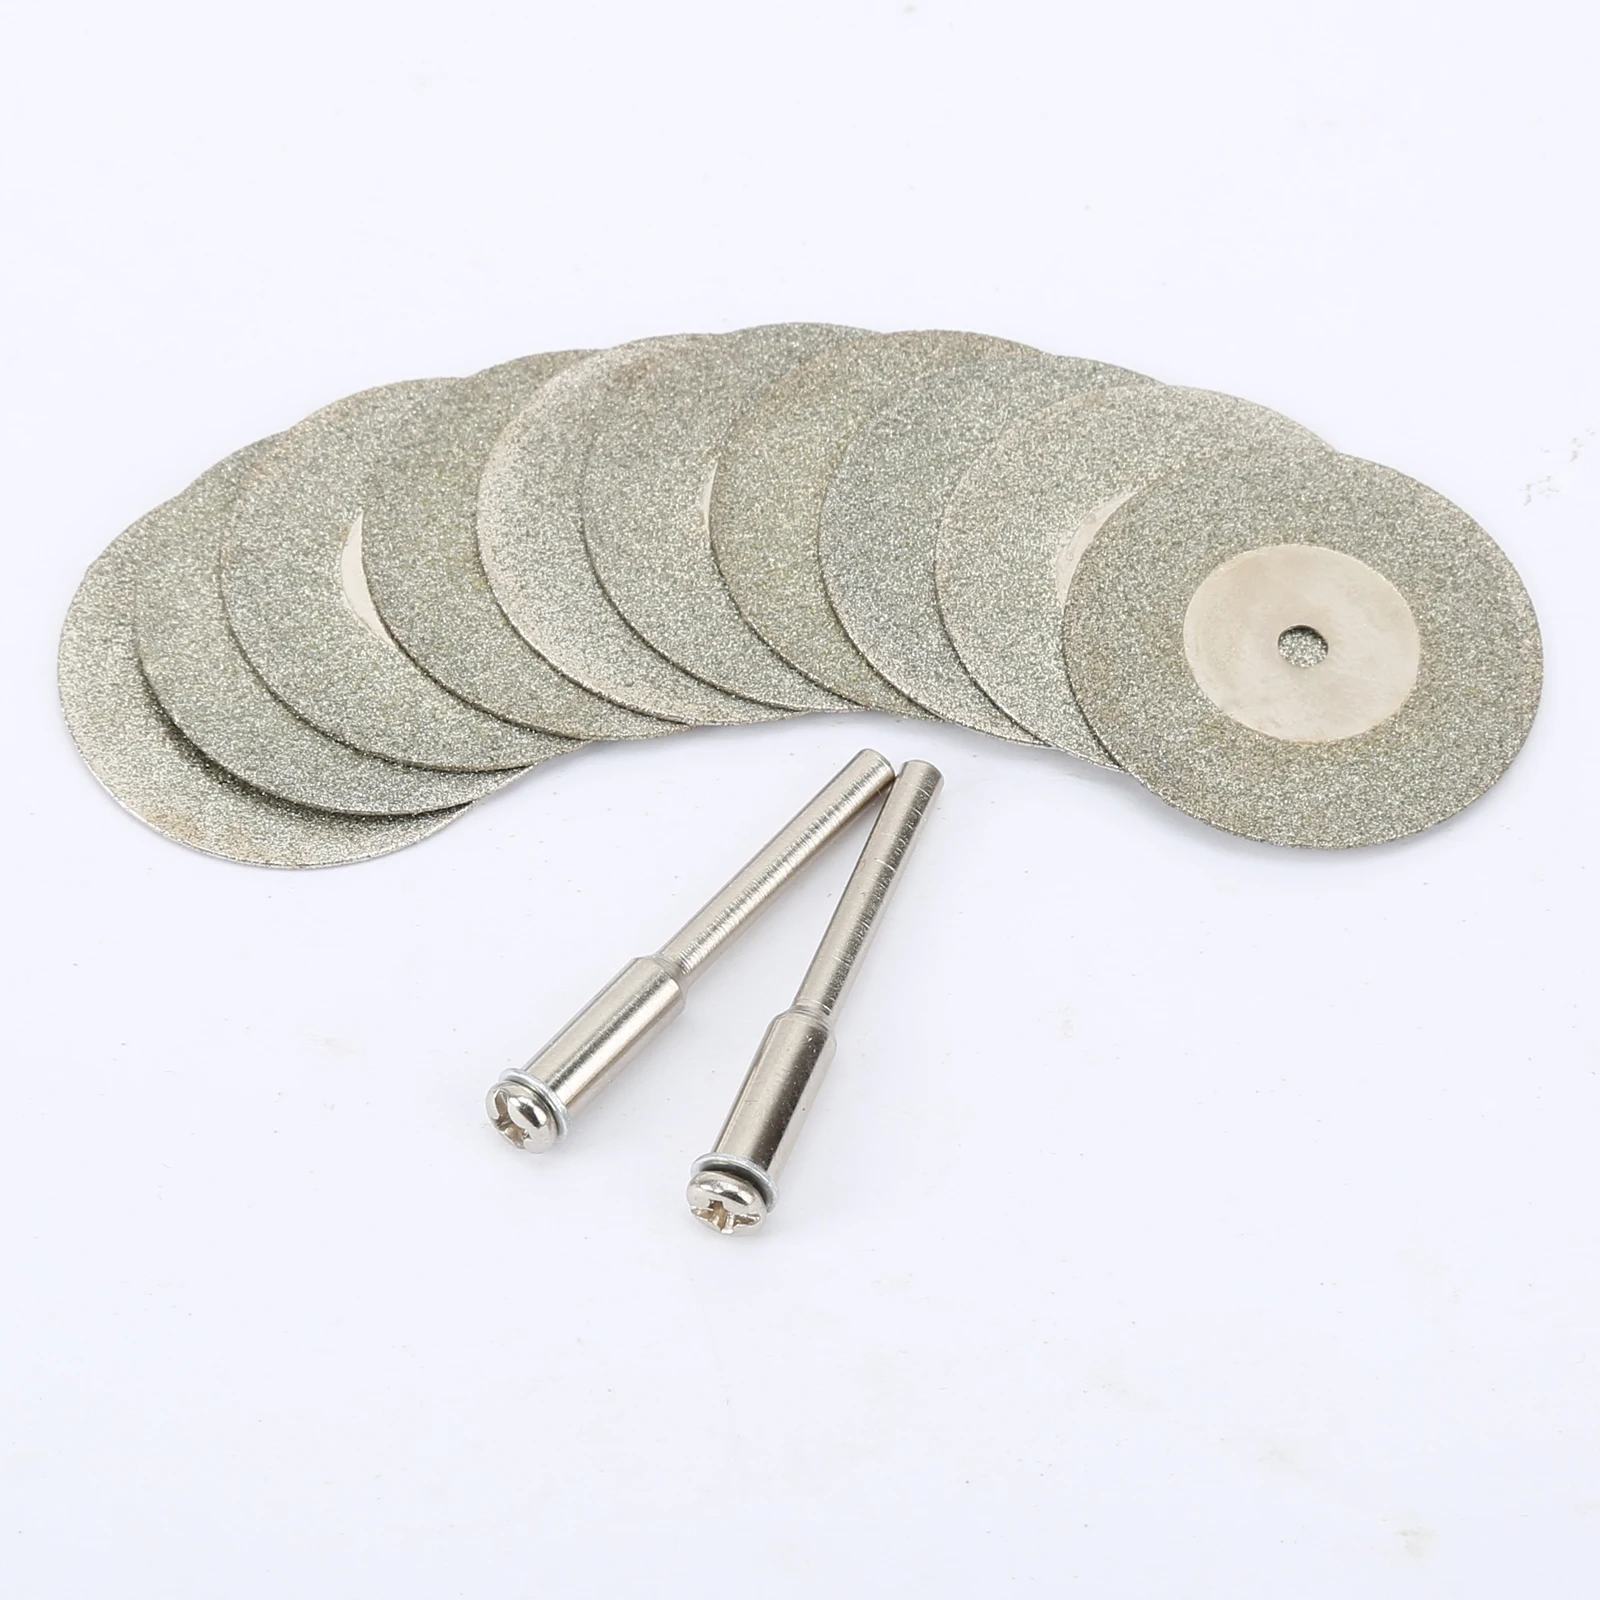 

20pcs 30mm Diamond Cutting Discs +4 Arbor Shaft CutOff Blade Drill Bit Dremel accessories Rotary Tool Abrasive Disk cut Metal